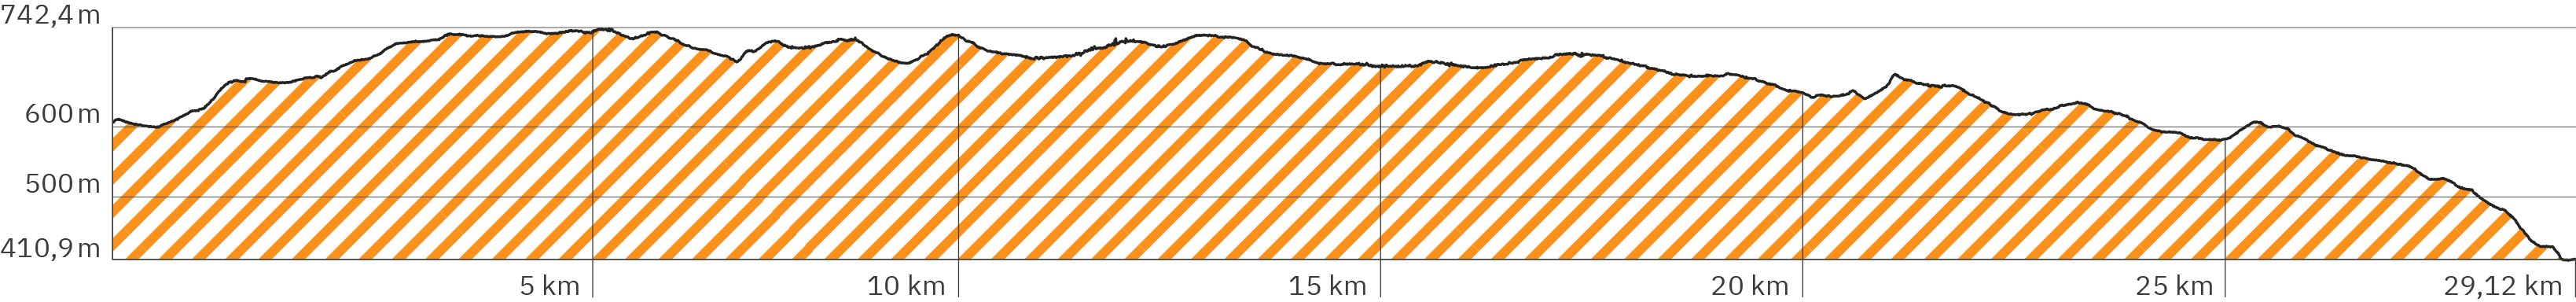 Höhenverlauf der 6. Rennsteig-Etappe – Länge 29,12 km – Start bei ca. 600 m, zu Beginn bergauf bis auf ca. 742 Höhenmeter, dann leichte Aufs und Abs, ab der zweiten Hälfte leicht absteigend mit kurzen Aufs und Abs ab Kilometer 20 und stärker abfallend ab Kilometer 26 bis runter auf ca. 410 Meter beim Etappen-Ende – Farbe der Schraffur ist Orange analog zum angezeigten Wegverlauf in der obigen Google Map